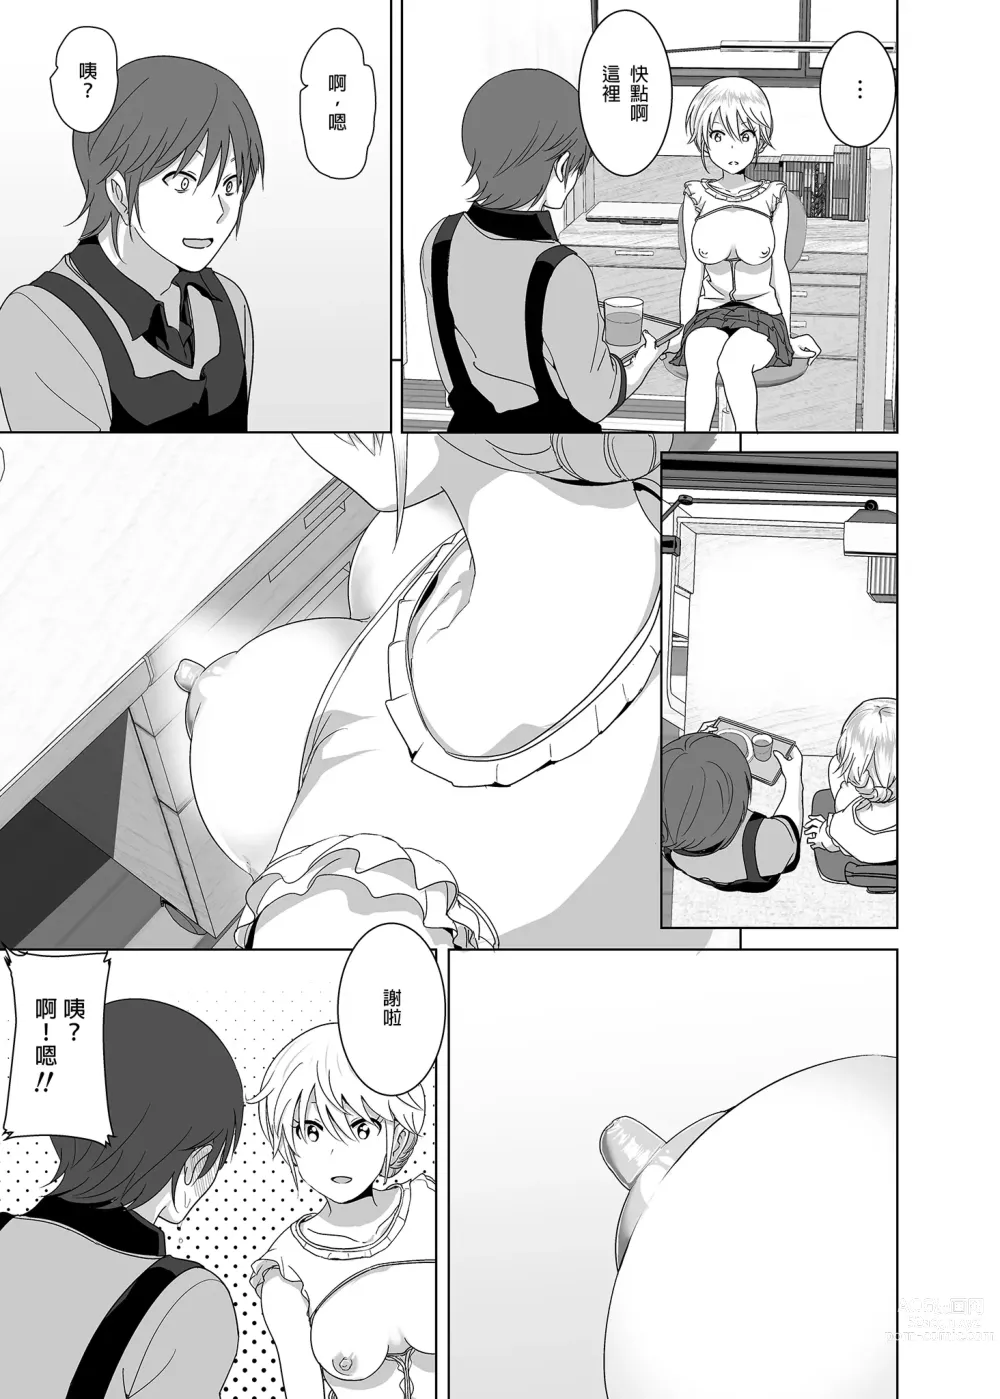 Page 4 of doujinshi 關於妹妹胸部 整顆露出來的那件事 總集篇1 (decensored)